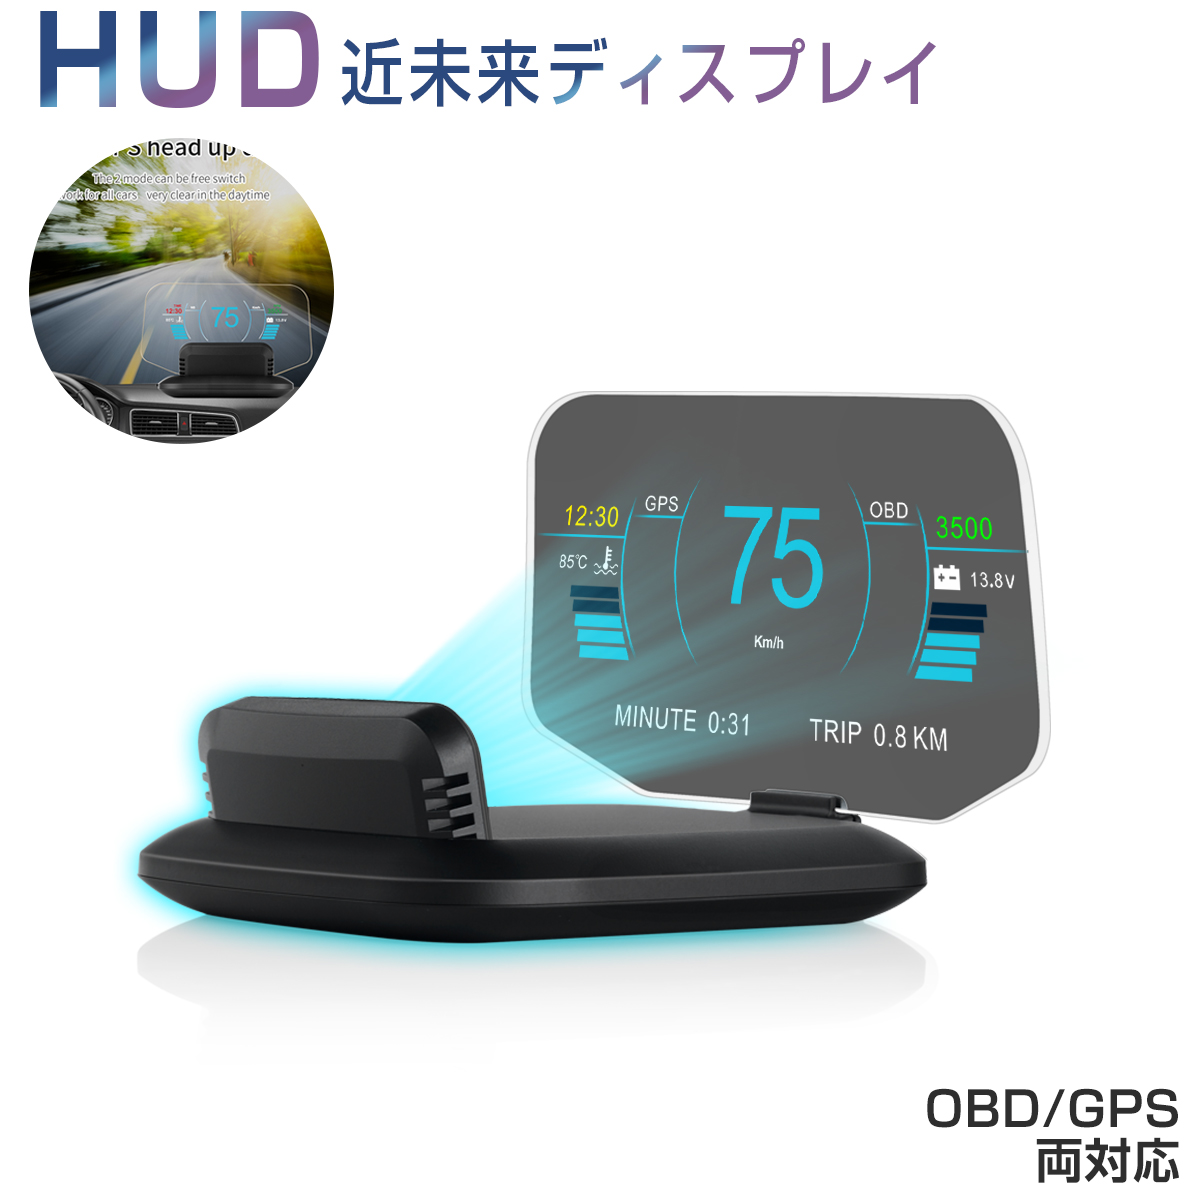 卸売B2B ヘッドアップディスプレイ HUD C1 OBD2+GPS 速度計 車 27の機能+48種類のフルカーデータ 大画面 二重表示防止 多彩表示 日本語説明書付き タコメーター 水温計 バッテリー電圧 燃費 海抜高度 警告機能 6ヶ月保証